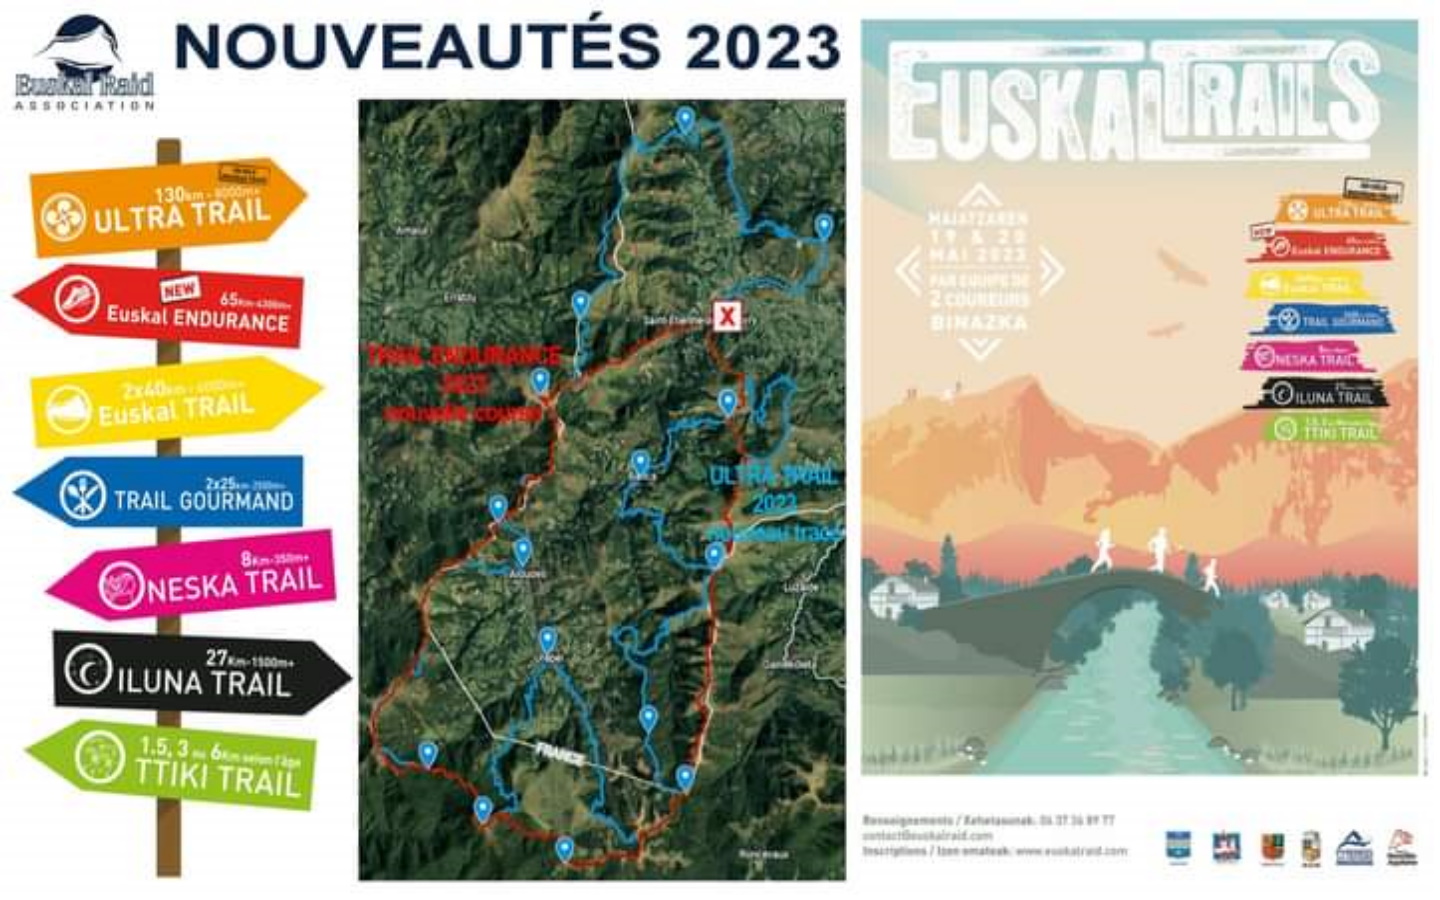 Euskal trail 2023